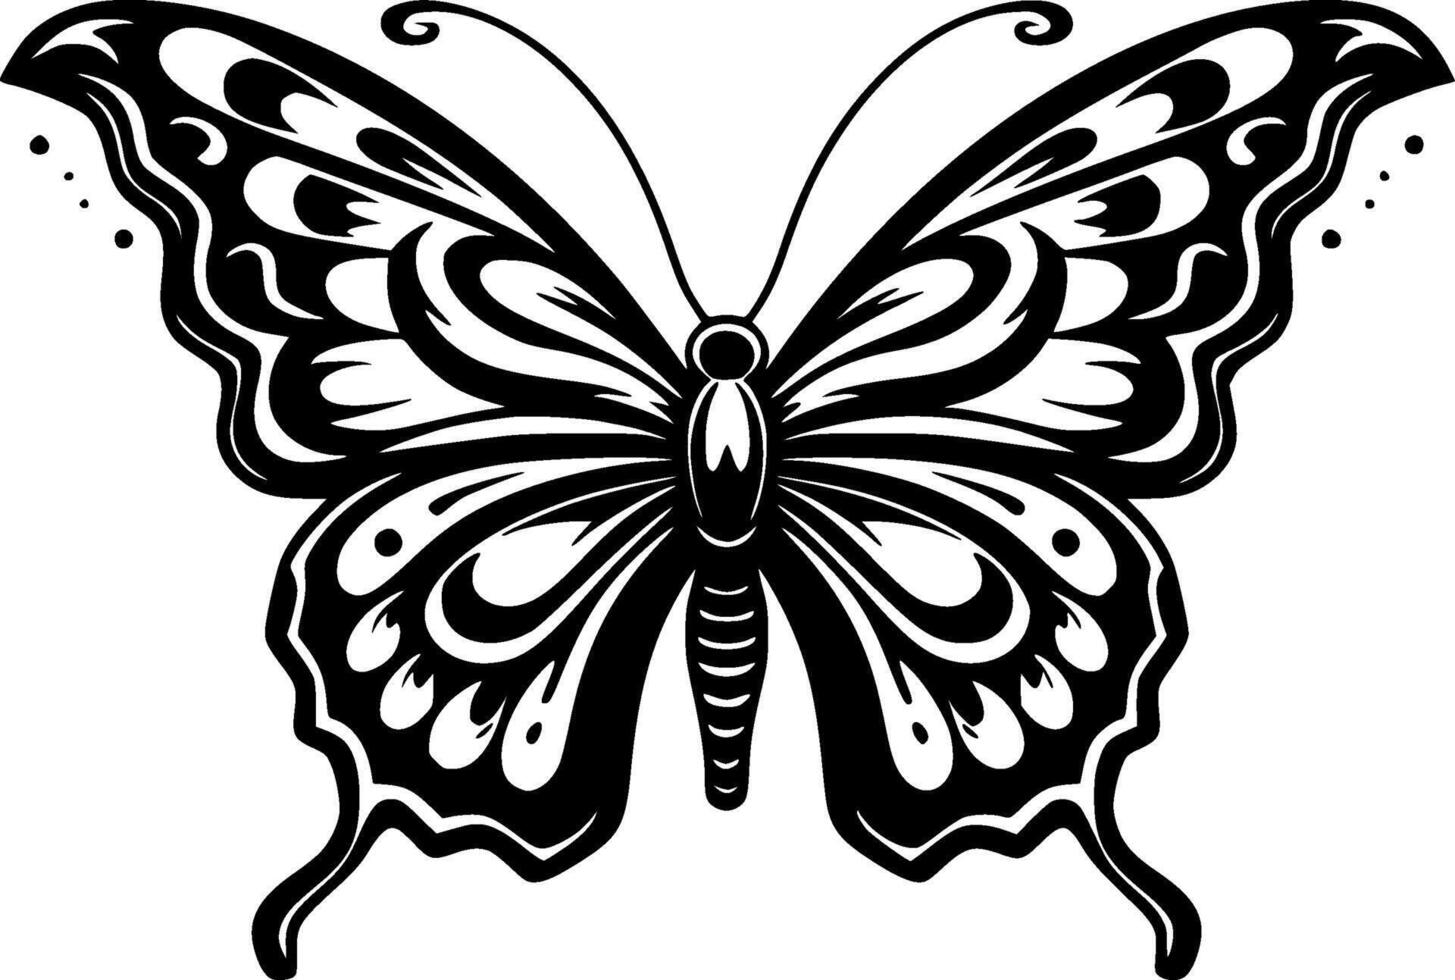 papillon - haute qualité vecteur logo - vecteur illustration idéal pour T-shirt graphique